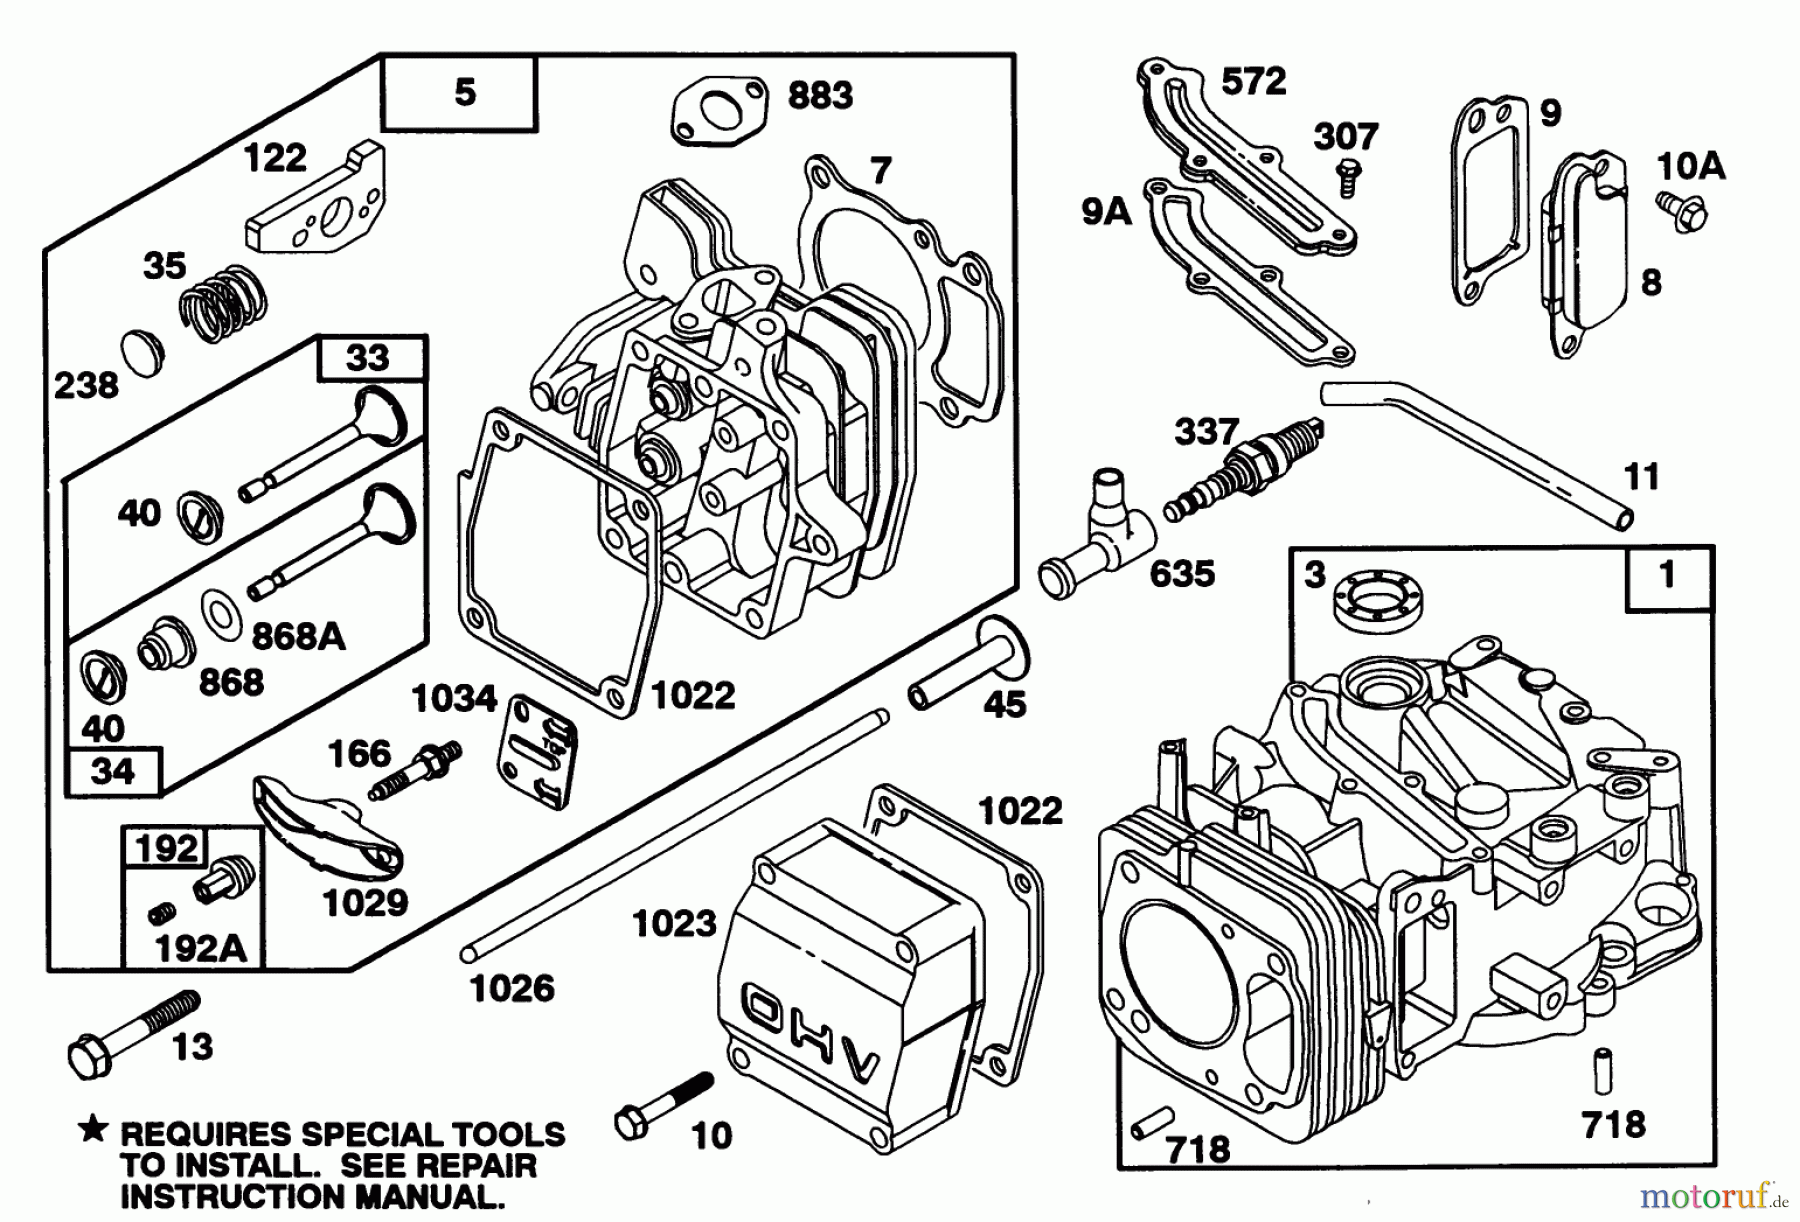  Toro Neu Mowers, Walk-Behind Seite 2 22151 - Toro Lawnmower, 1993 (3900856-3999999) ENGINE GTS 150 #1